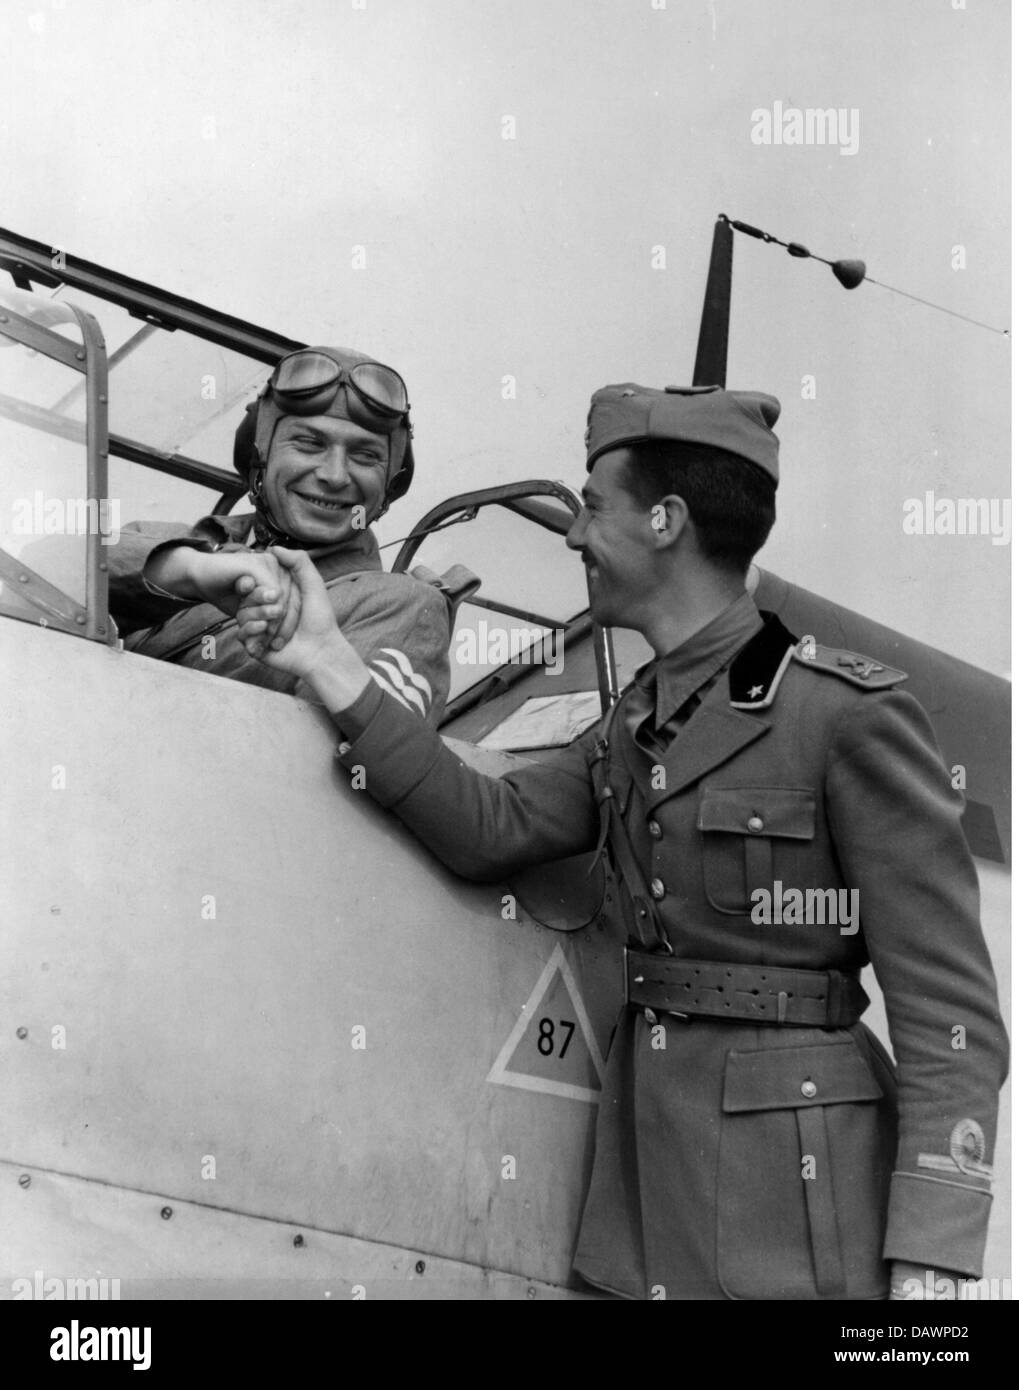 Nazisme / National socialisme, militaire, Wehrmacht, Luftwaffe, officier italien visitant une unité allemande de Luftwaffe, novembre 1941, poignée de main avec un pilote allemand avant son décollage avec un avion de chasse Messerschmitt BF 109, Additional-Rights-Clearences-Not Available Banque D'Images